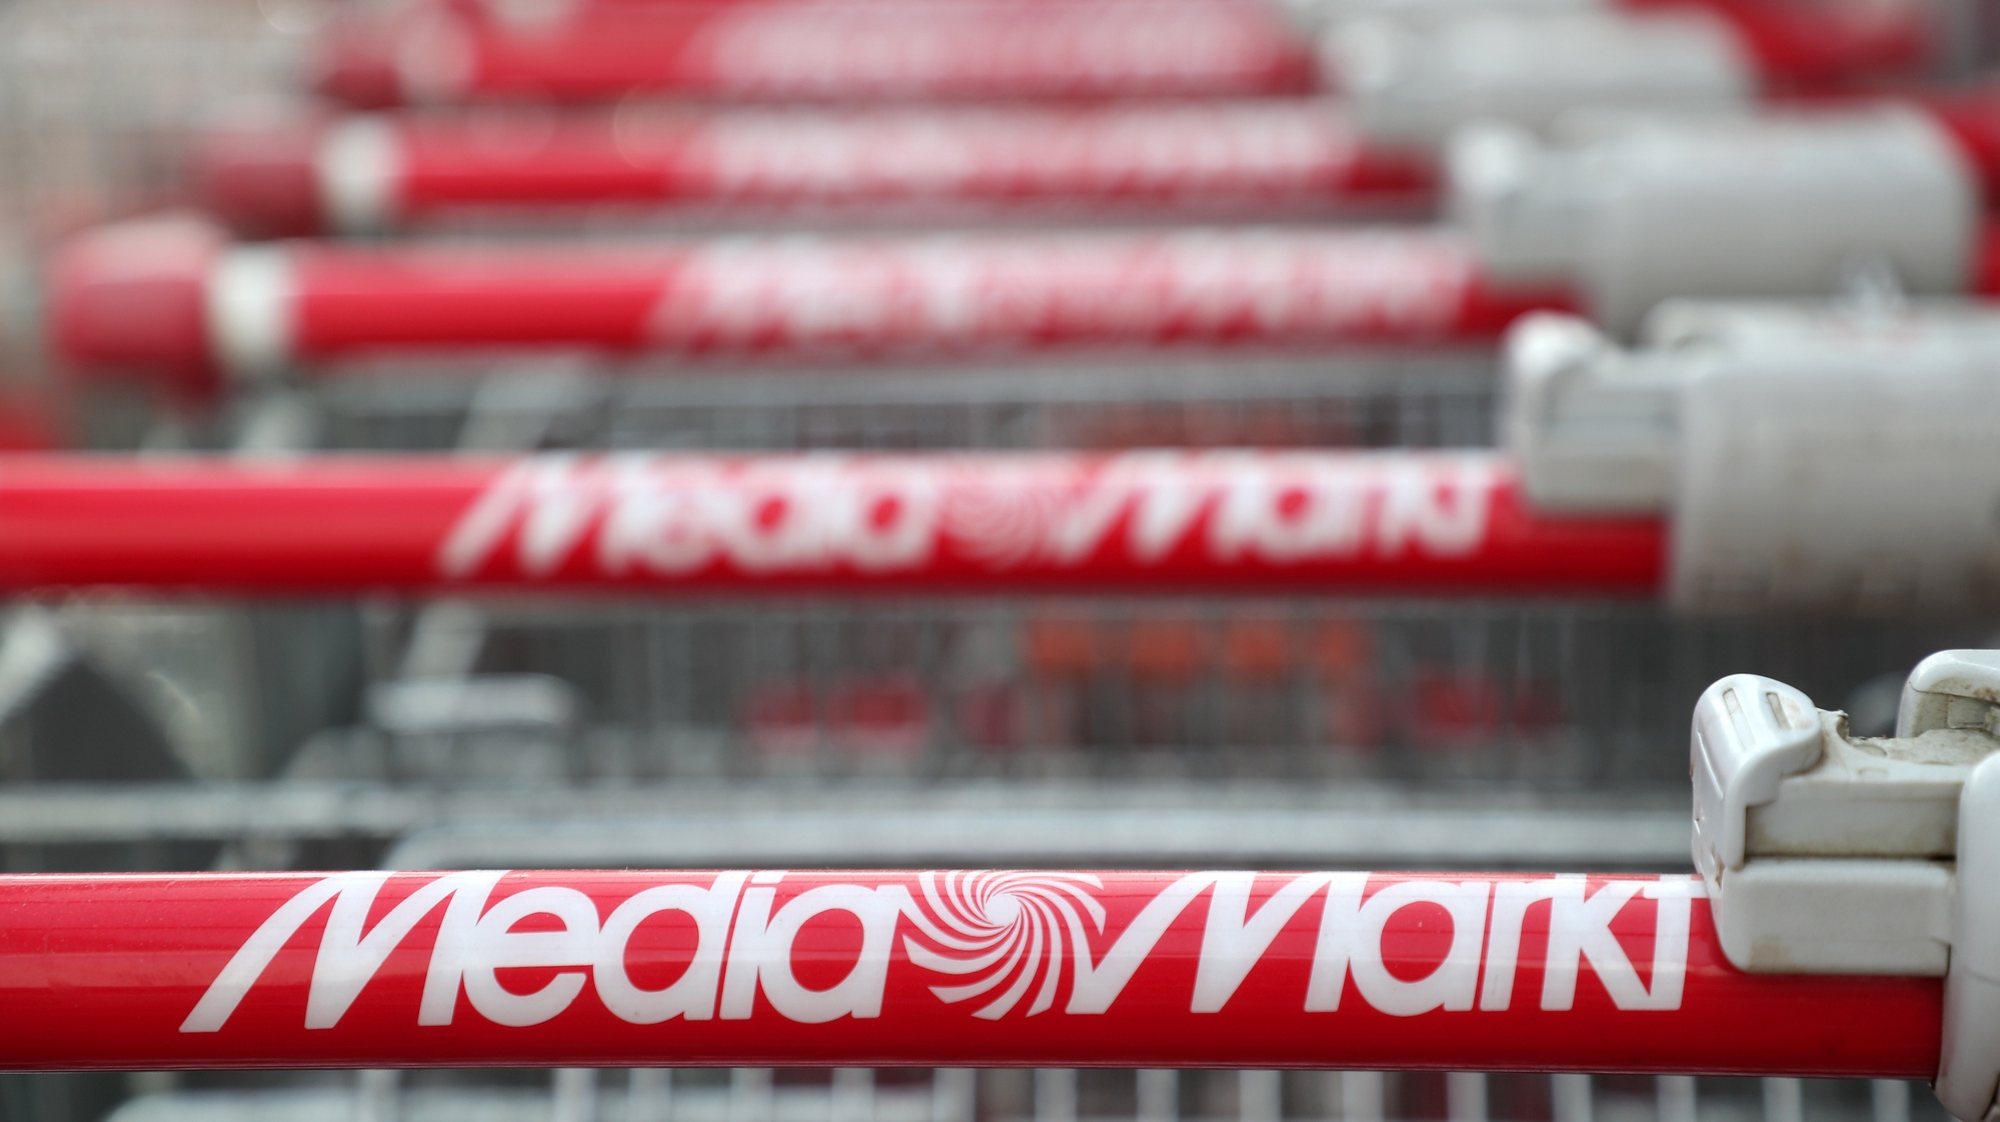 Portugal: Fnac avança com compra de lojas da MediaMarkt